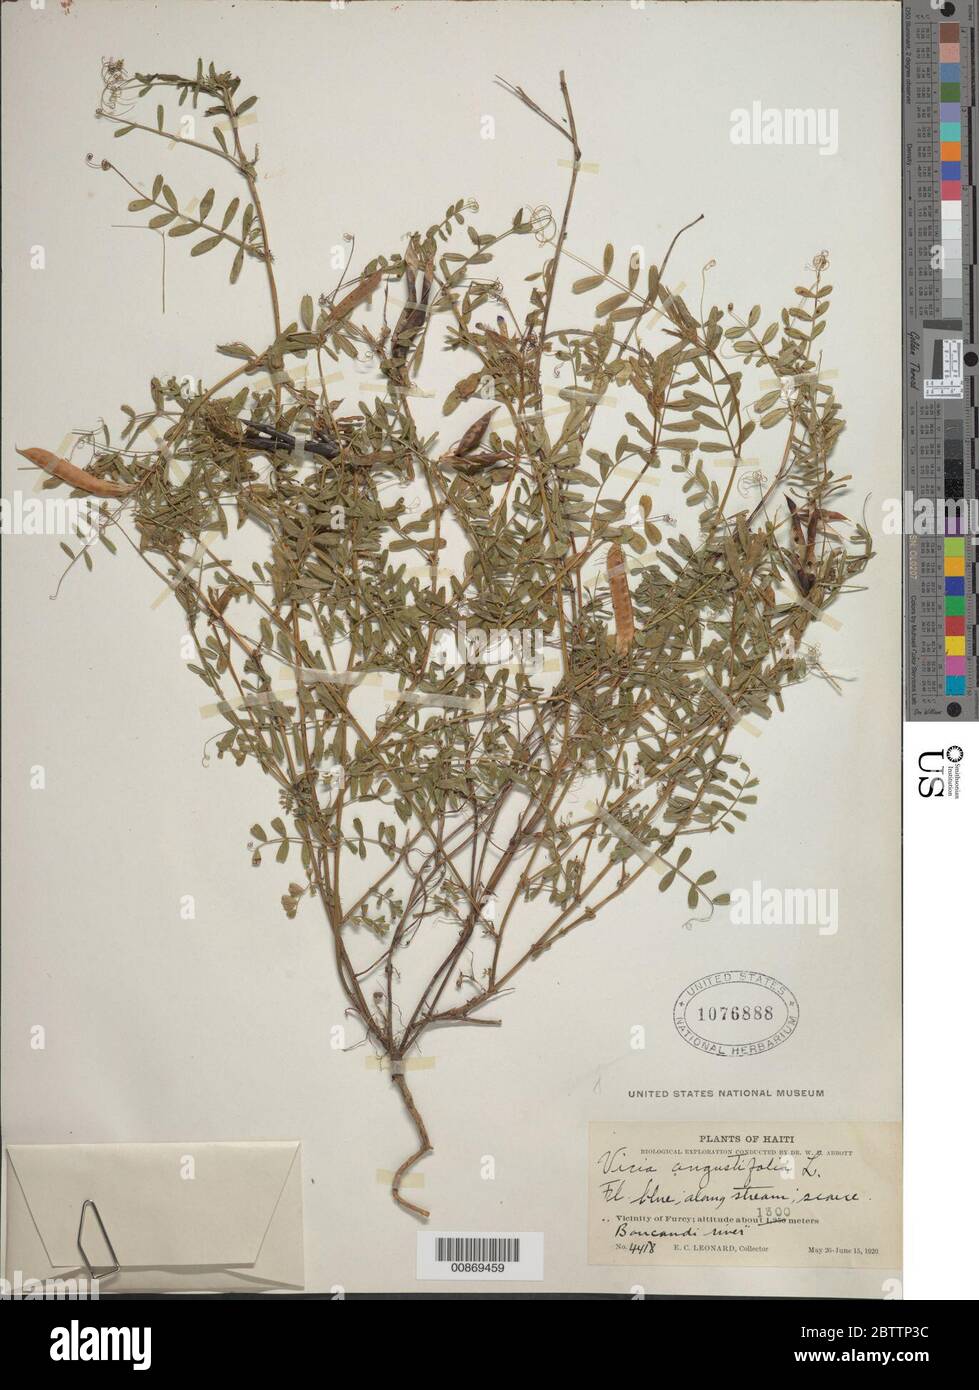 Vicia angustifolia L. Stock Photo